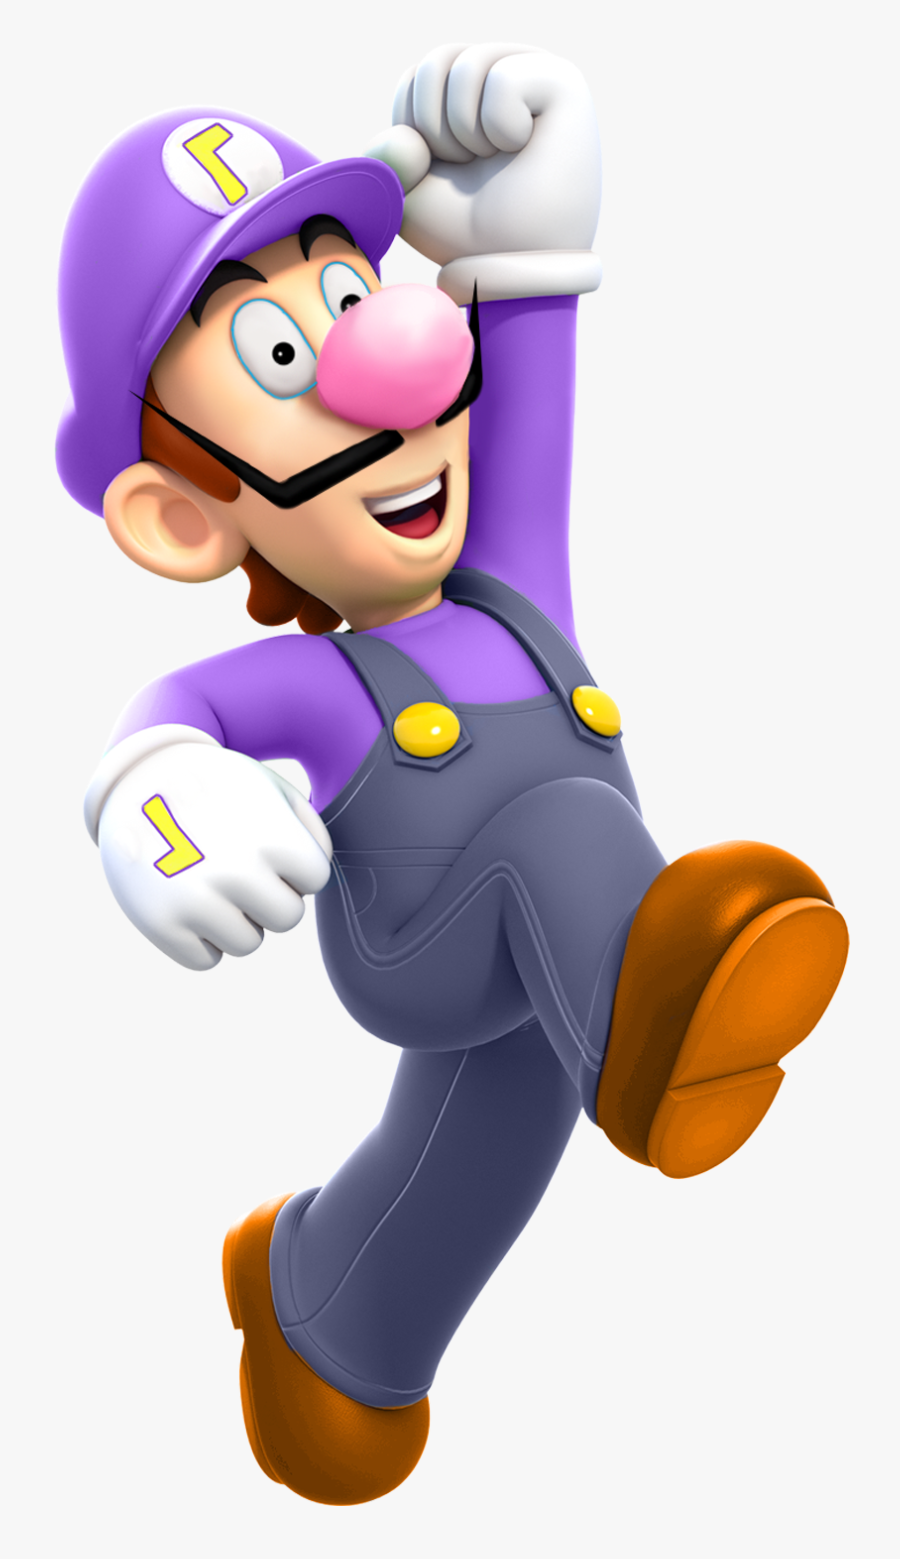 Super Mario Characters Png, Transparent Clipart